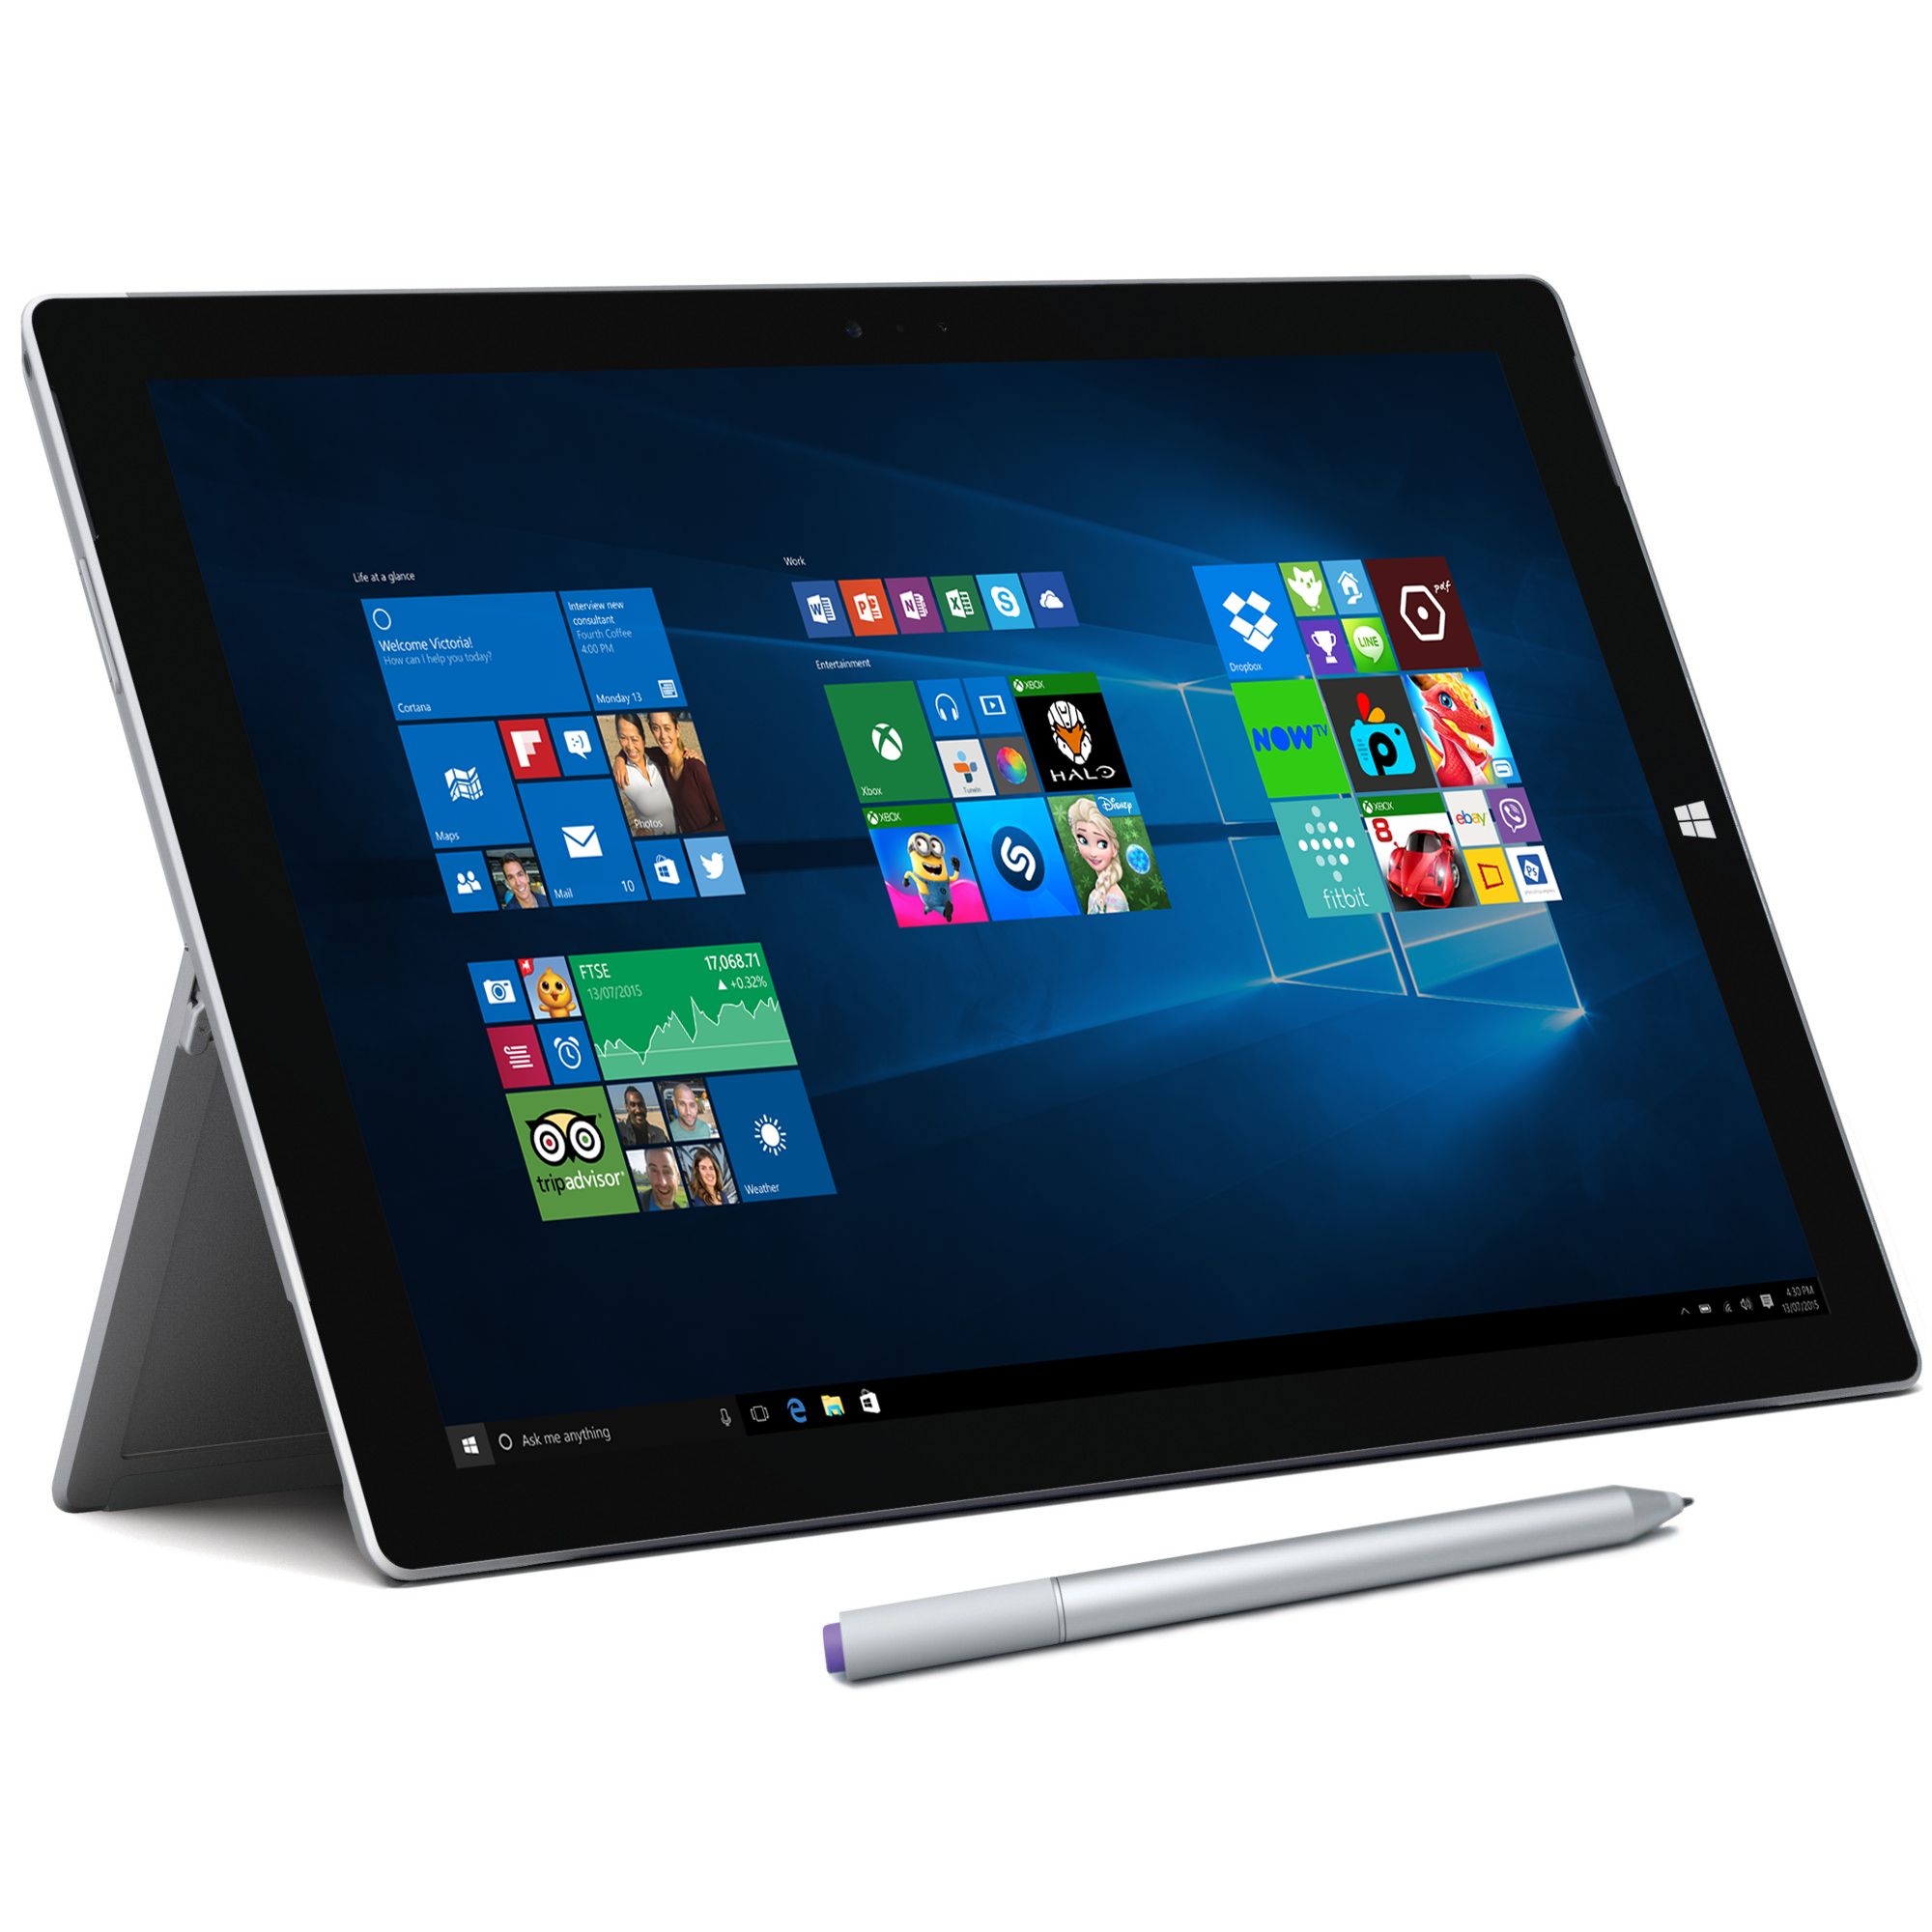 Microsoft Surface Pro 3, Intel Core i5, 4GB RAM, Windows 10 Pro